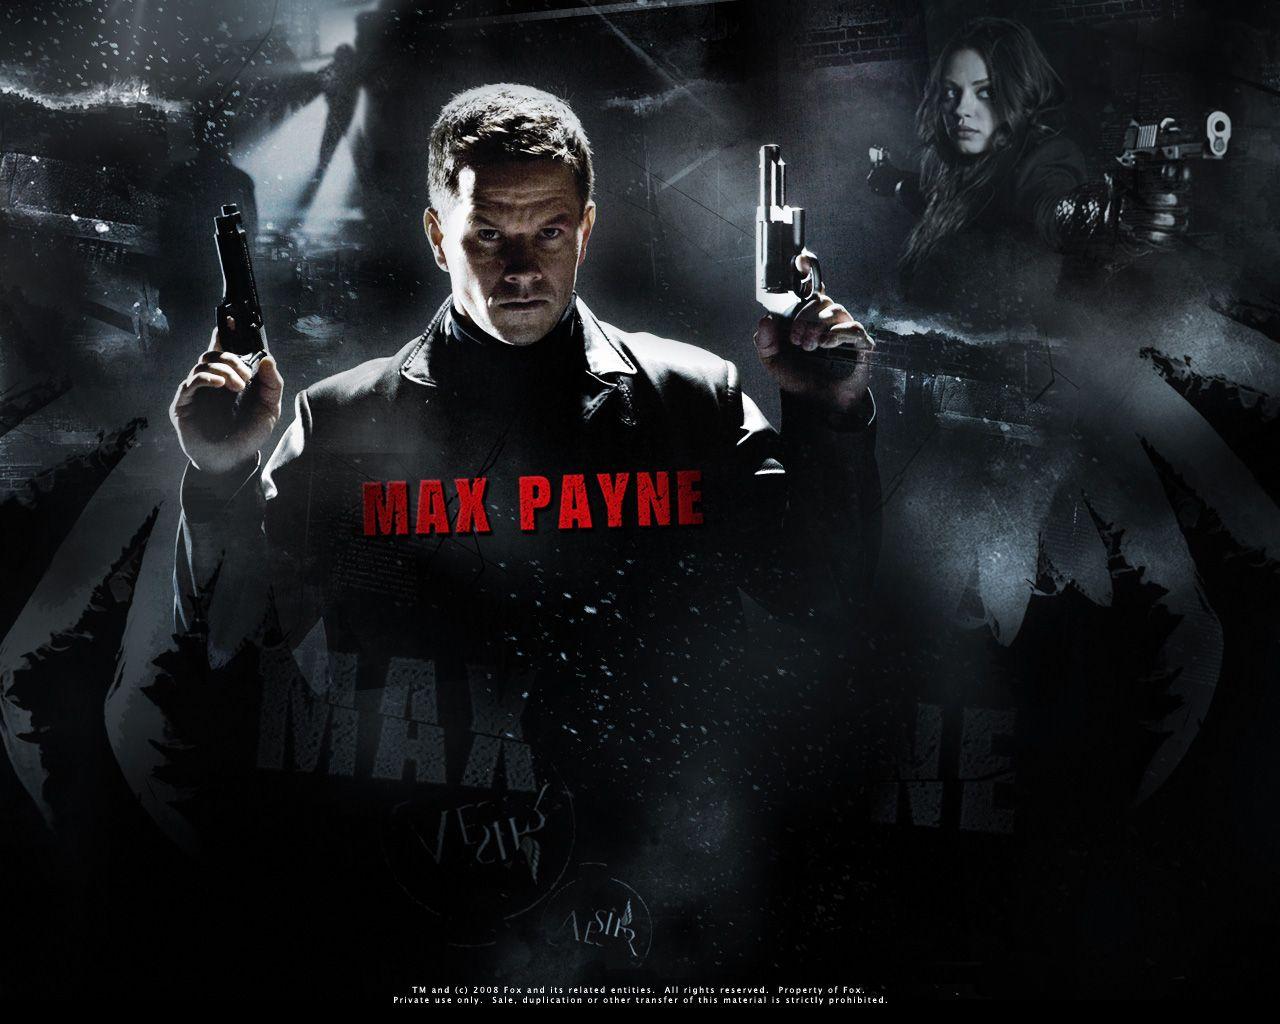 Max Payne movie